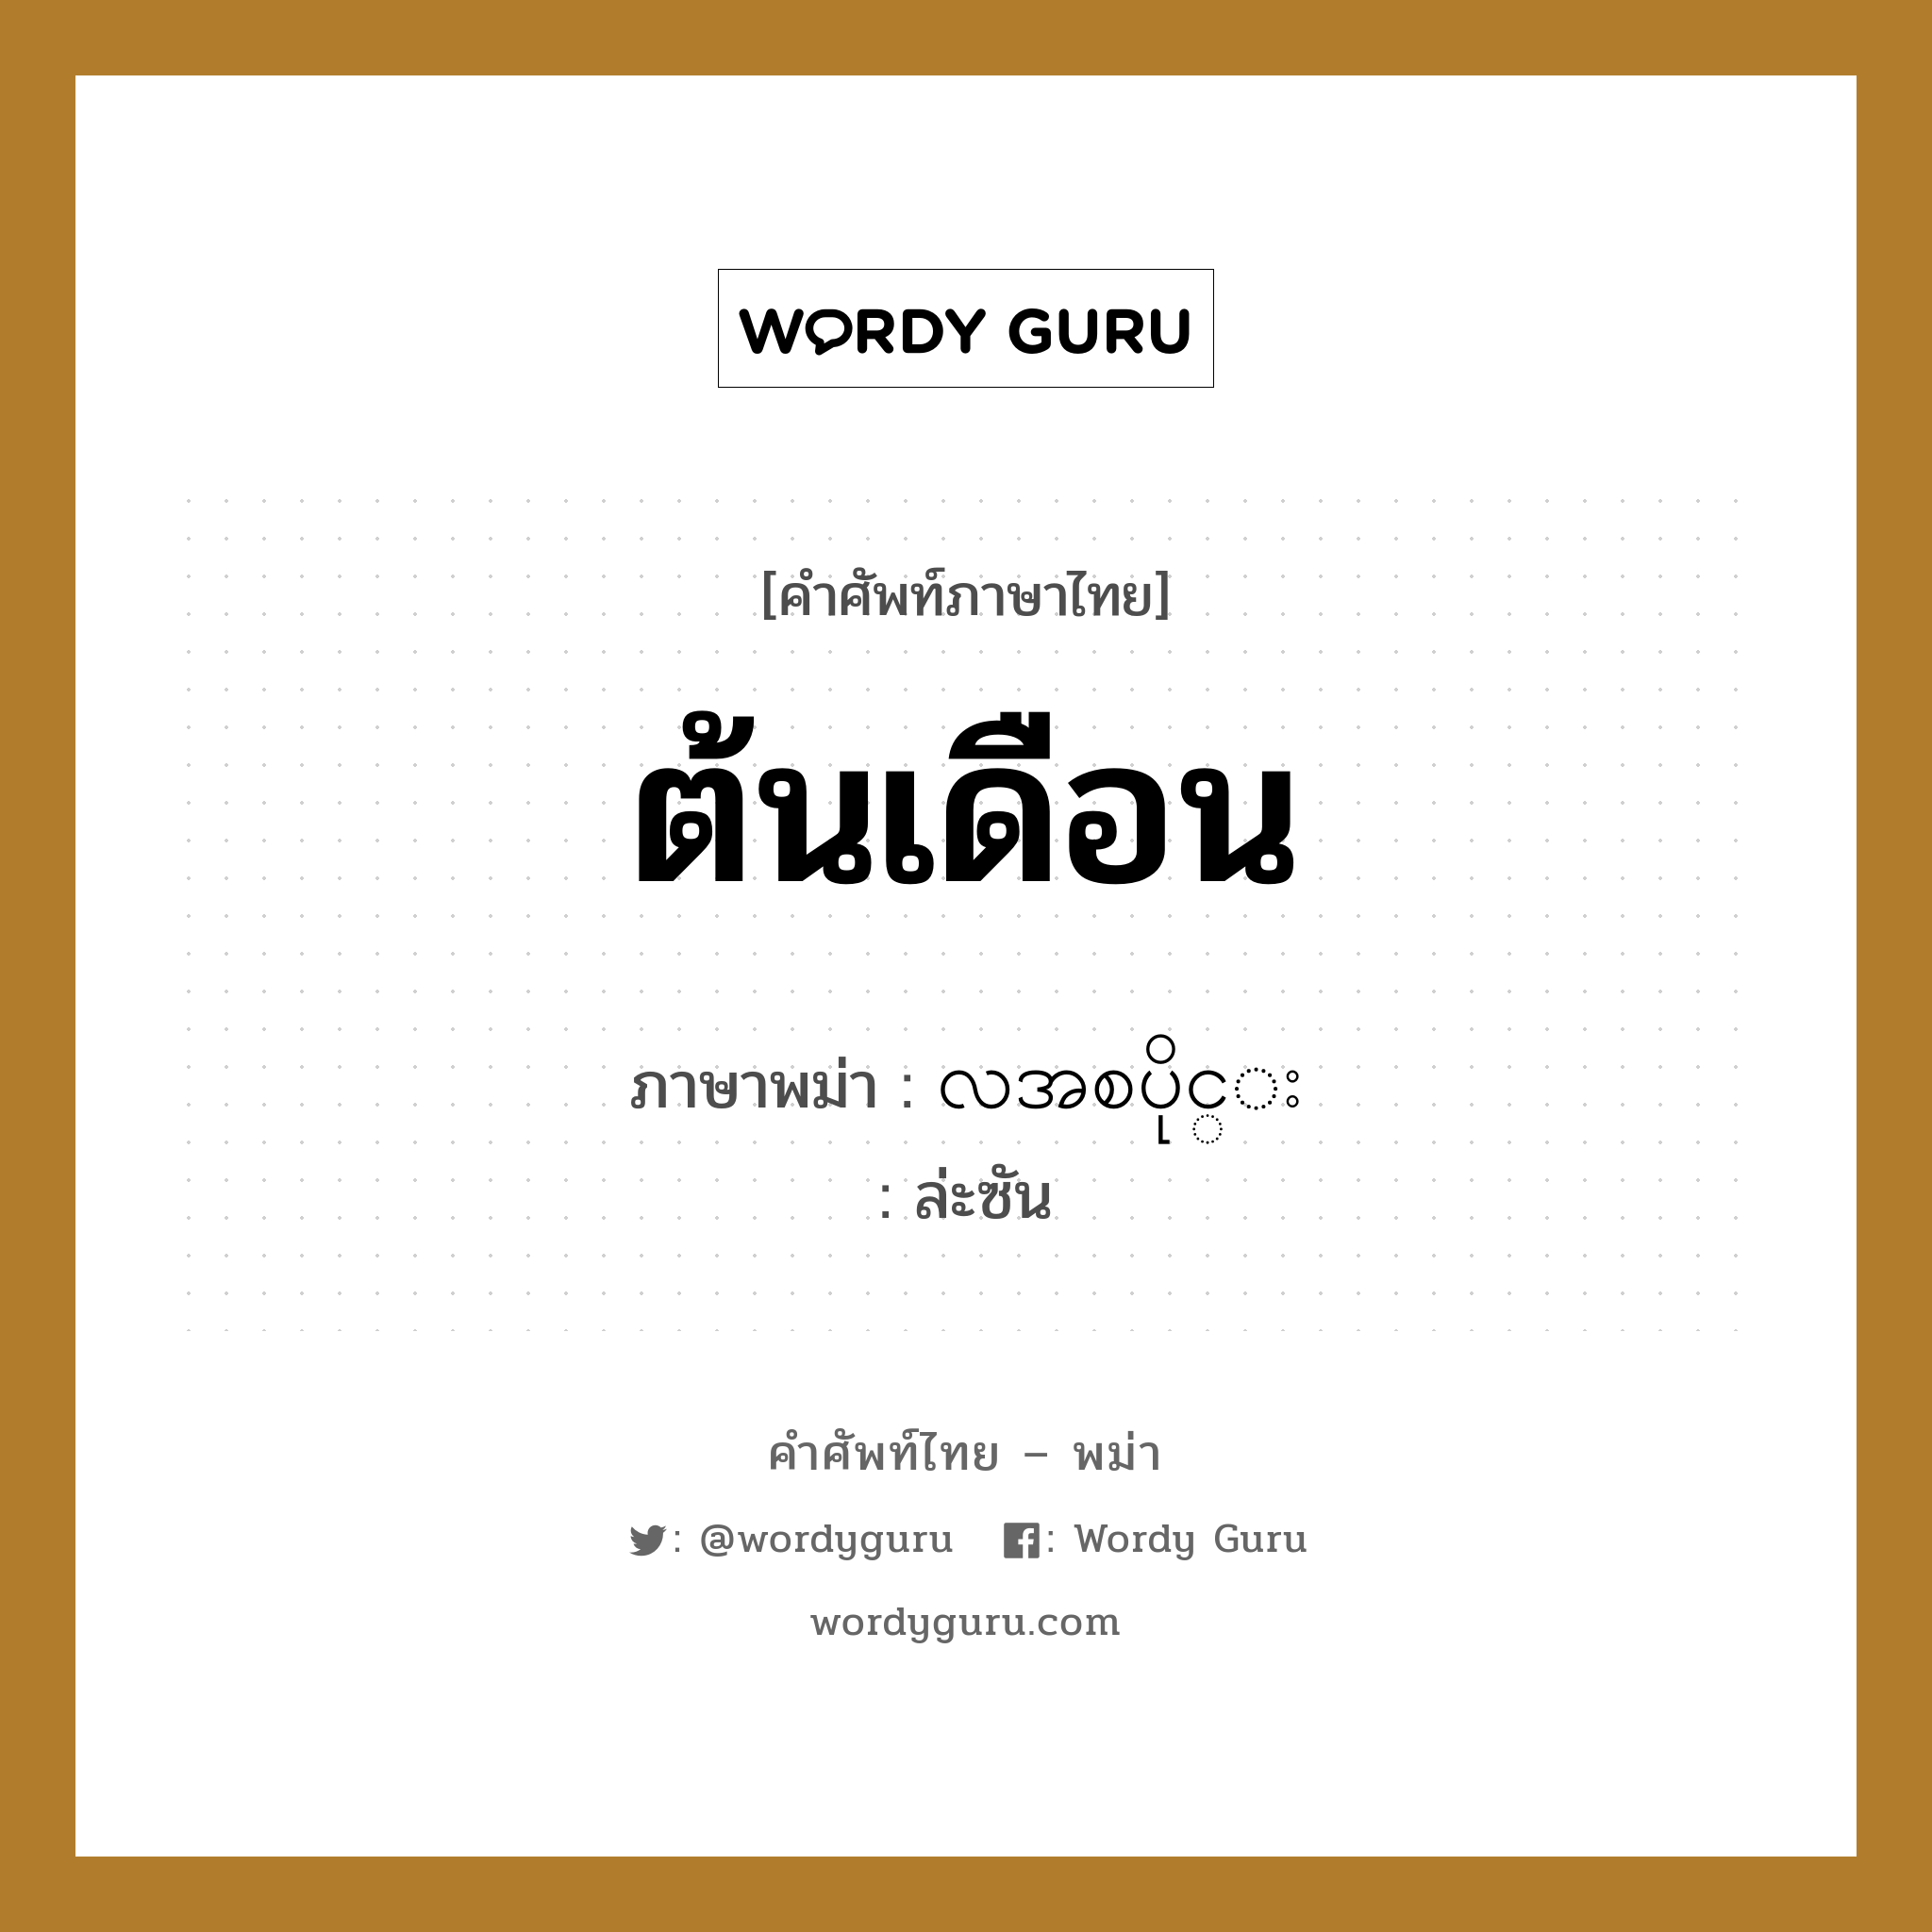 ต้นเดือน ภาษาพม่าคืออะไร, คำศัพท์ภาษาไทย - พม่า ต้นเดือน ภาษาพม่า လအစပိုင္း หมวด หมวดวัน เดือน ปี ล่ะซัน หมวด หมวดวัน เดือน ปี